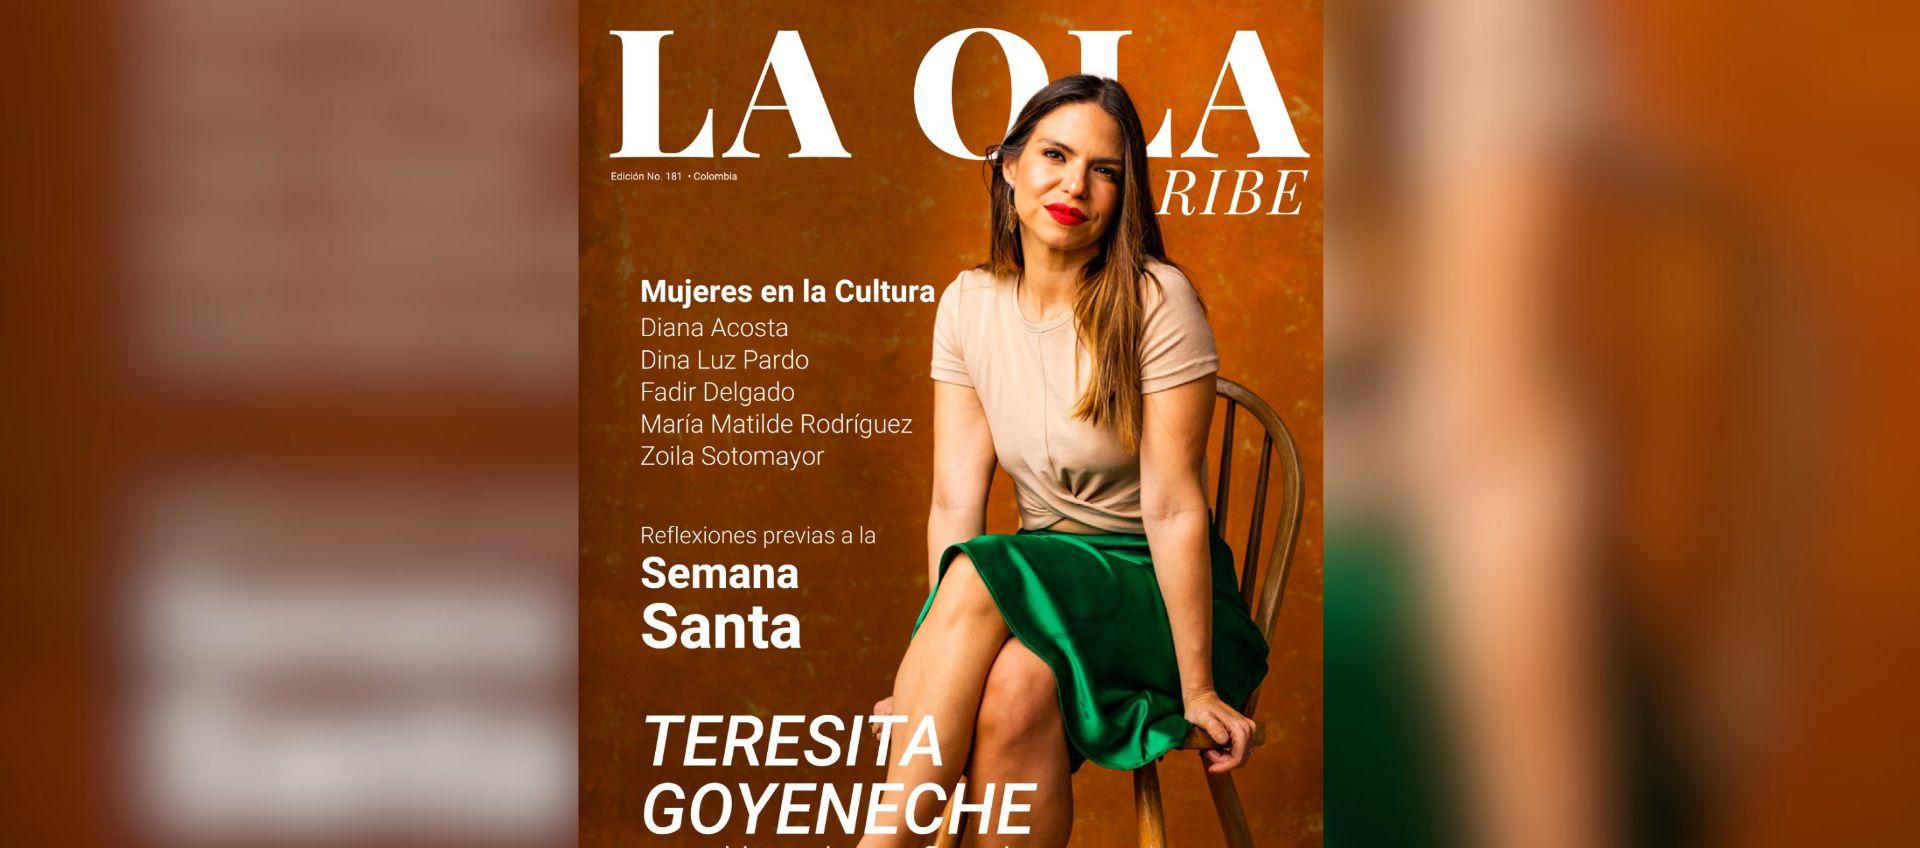 Teresita Goyeneche en la portada de la nueva edición de La Ola Caribe.